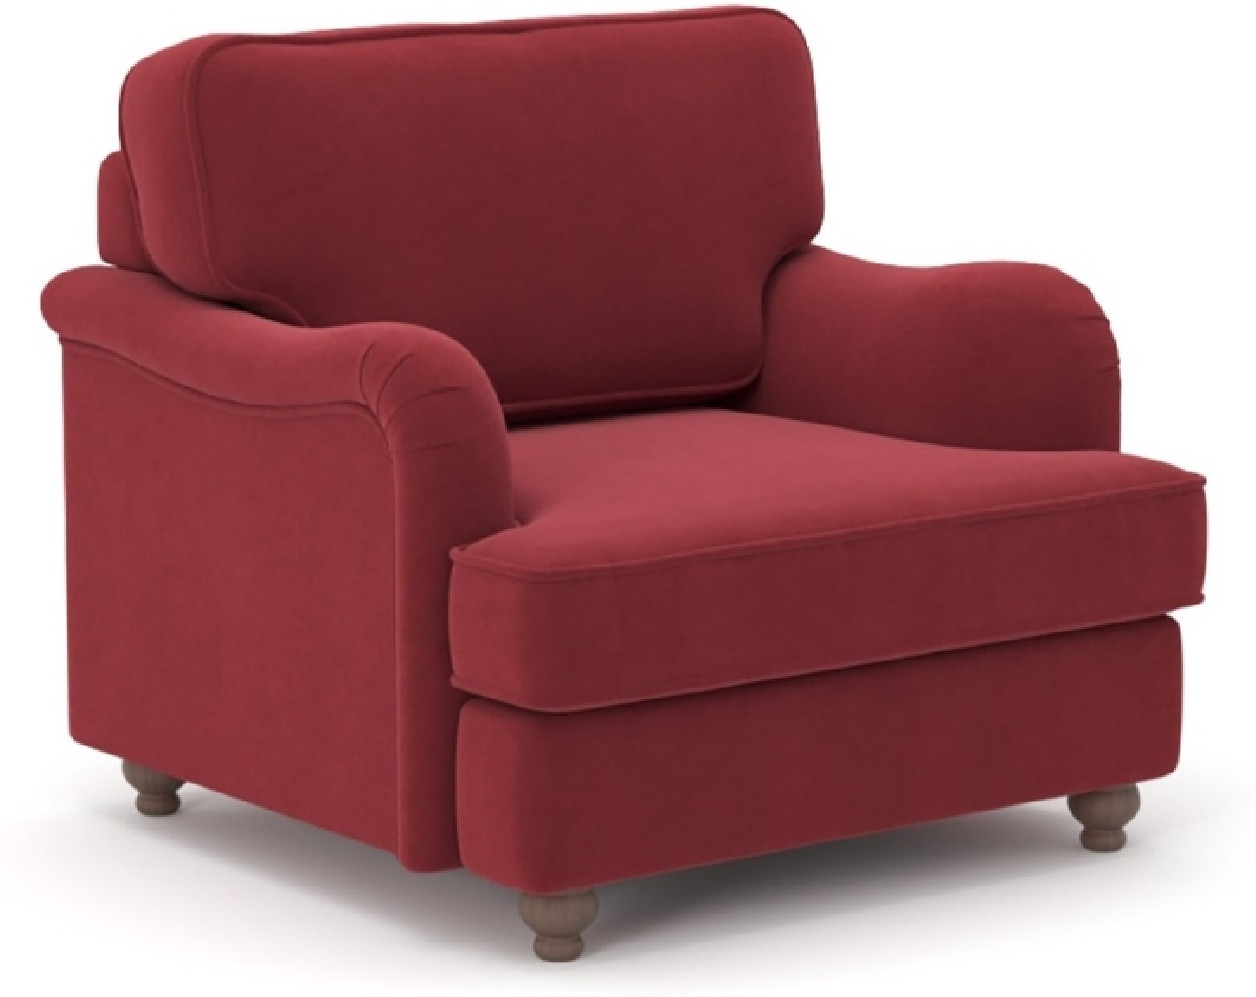 Hoffmann классическое кресло, обивка ткань Orson red 92